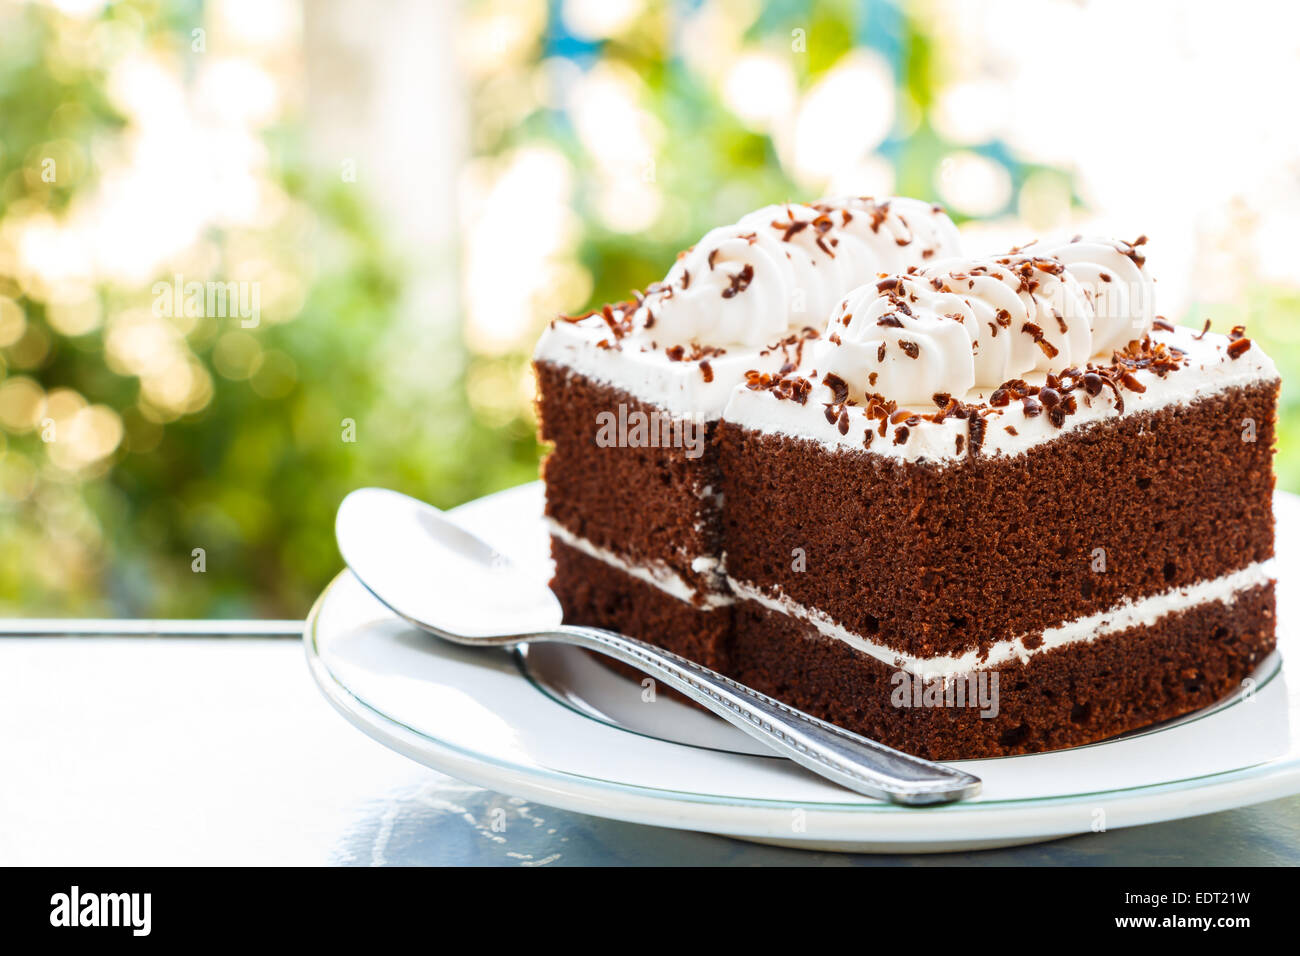 Les gâteaux au chocolat avec crème blanche sur le dessus et la cuillère sur la plaque et à l'arrière-plan flou Banque D'Images